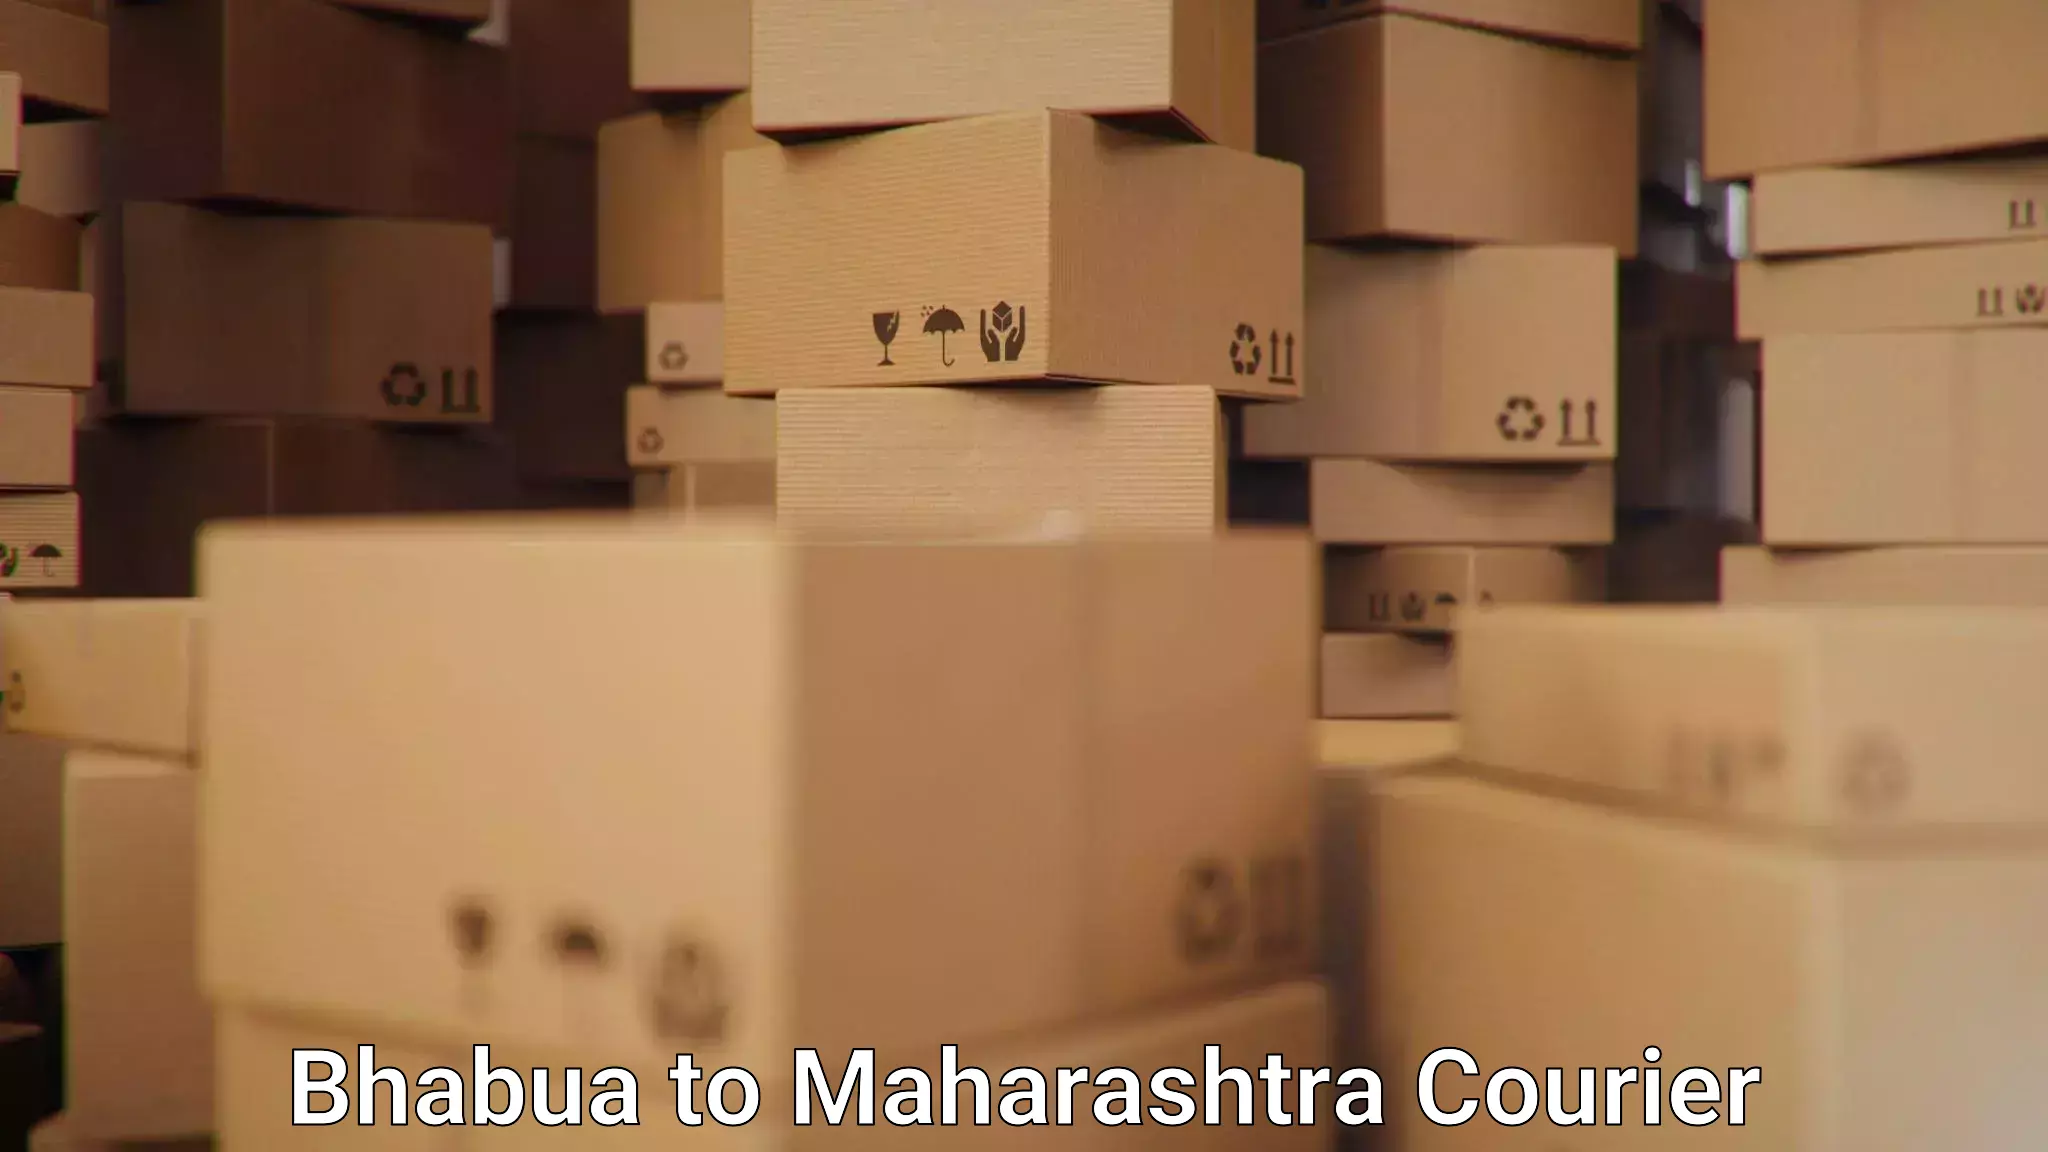 Retail shipping solutions Bhabua to Bhiwandi